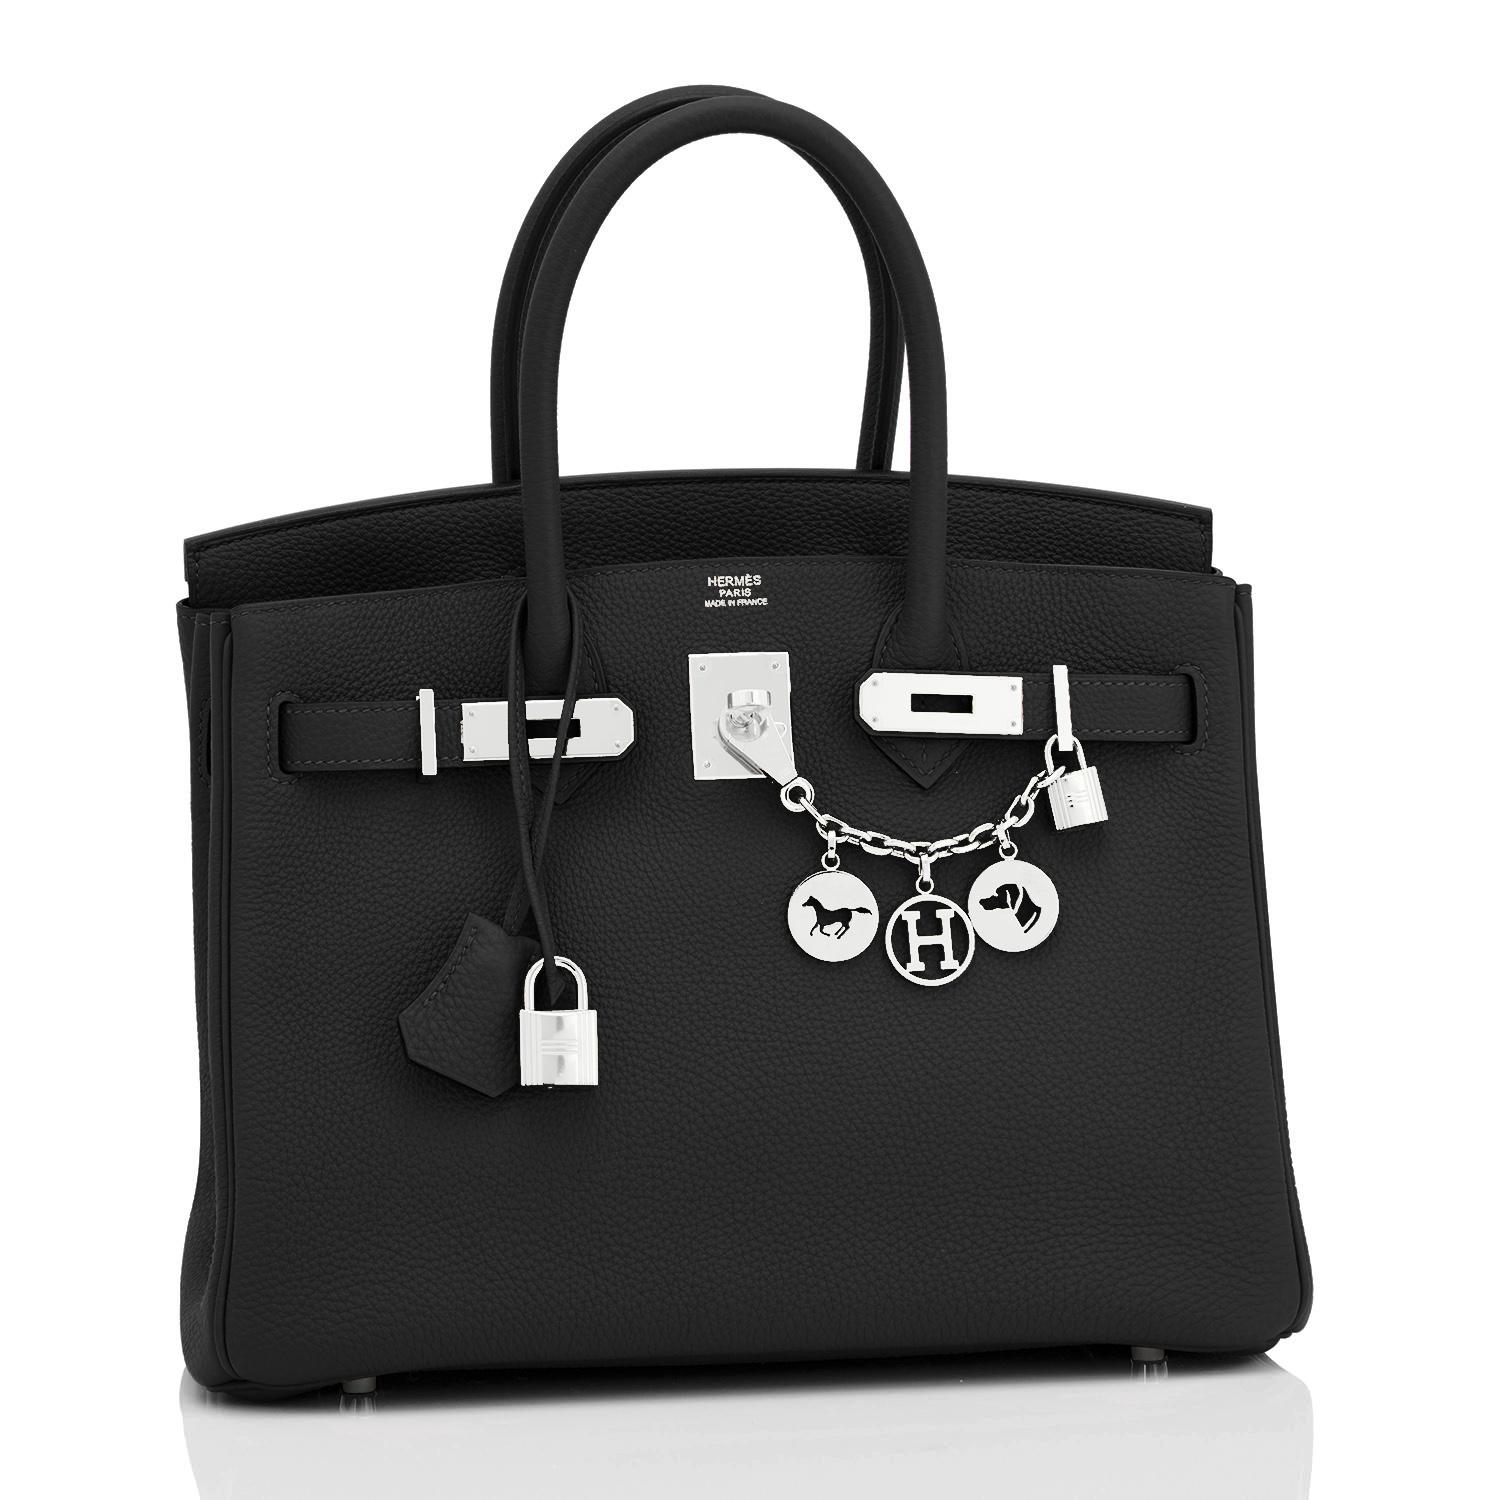 Hermes Birkin 30cm noir Togo Palladium Hardware Bag U Stamp, 2022
Acheté dans une boutique Hermès, le sac porte un nouveau tampon U à l'intérieur de 2022.
Neuf dans la boîte. Frais de magasin. Condit (avec plastique sur le matériel)
Un cadeau